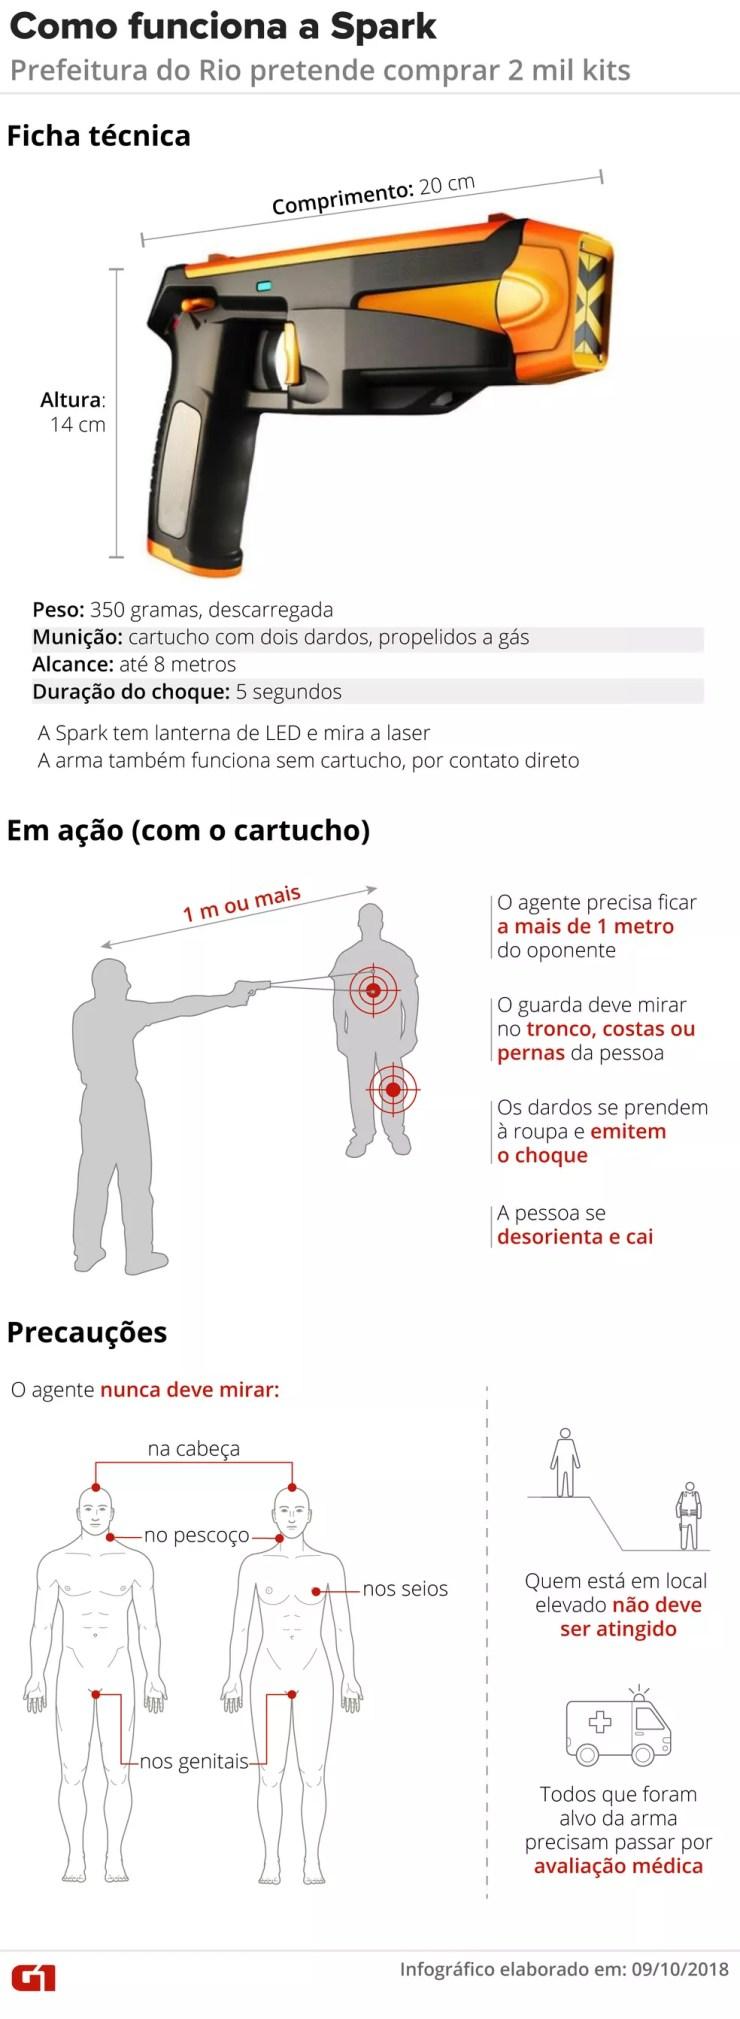 Ficha da arma de choque mostra como é usada — Foto: Infografia: Claudia Peixoto/G1